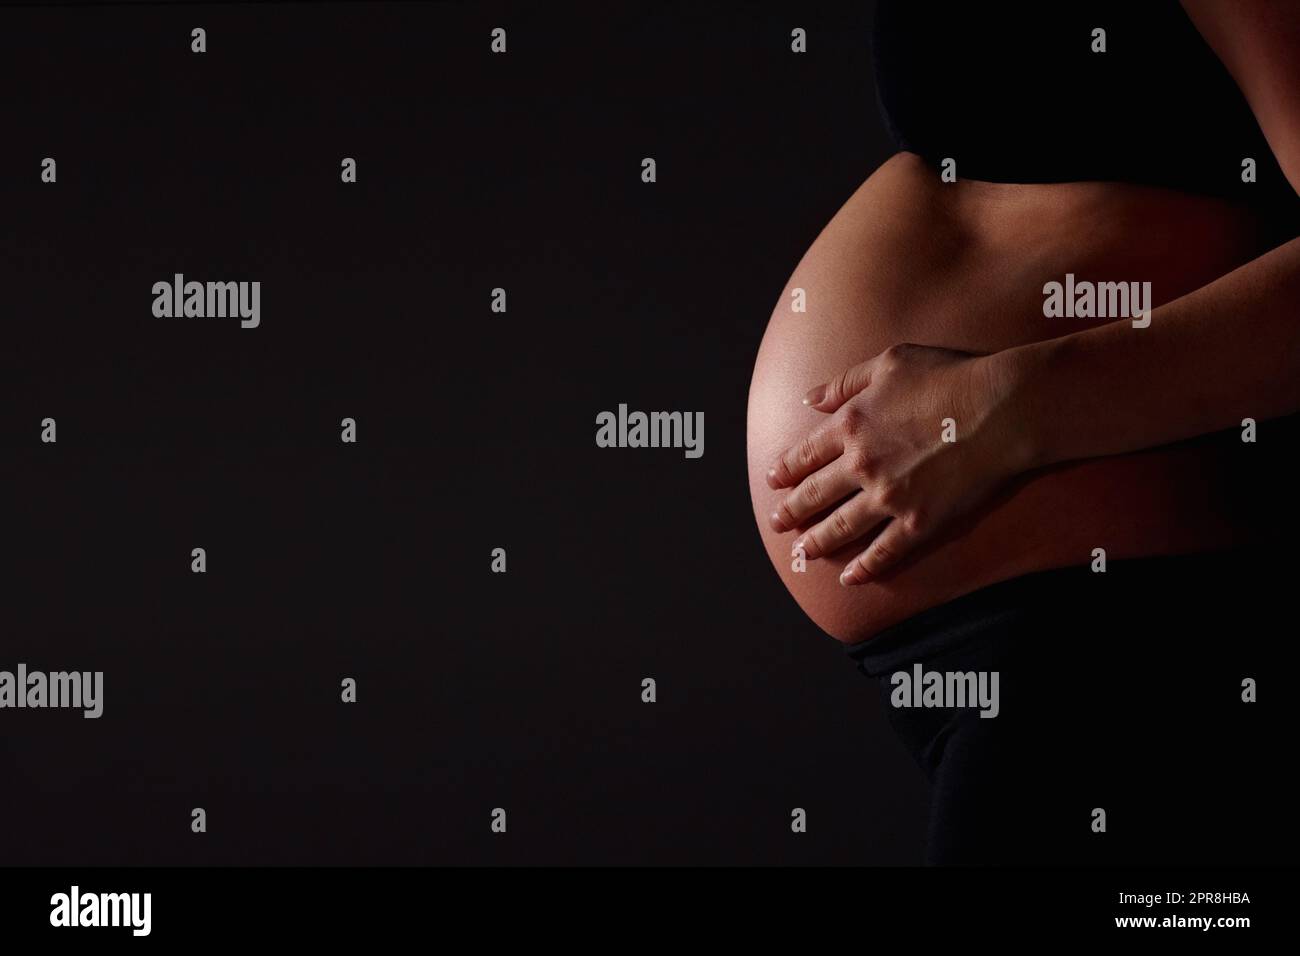 Schwanger Frau fühlt ihr Baby gegen schwarz - Copyspace. Mittelteil einer Schwangeren, die ihr Baby vor schwarzem Hintergrund fühlt - Copyspace. Stockfoto